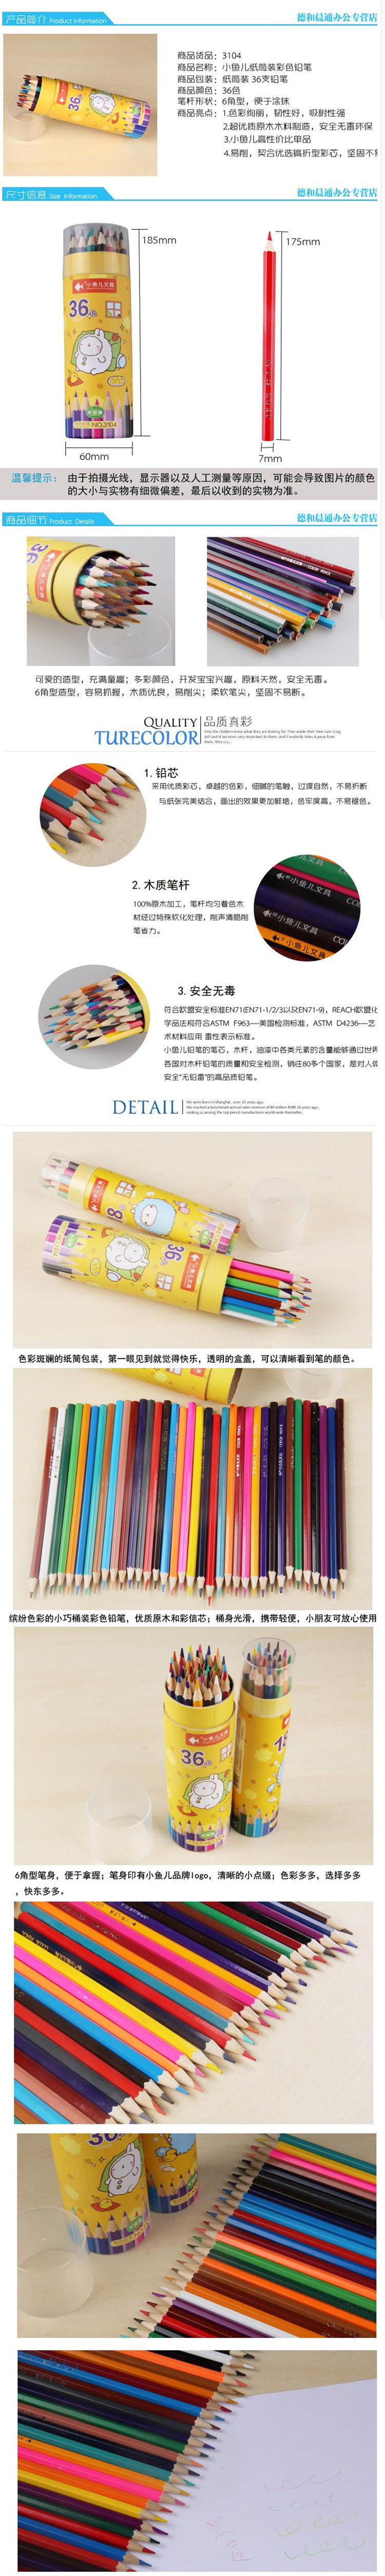 【赣州馆】小鱼儿儿童彩色铅笔36色创意文具学生绘画涂鸦涂色彩铅笔筒装